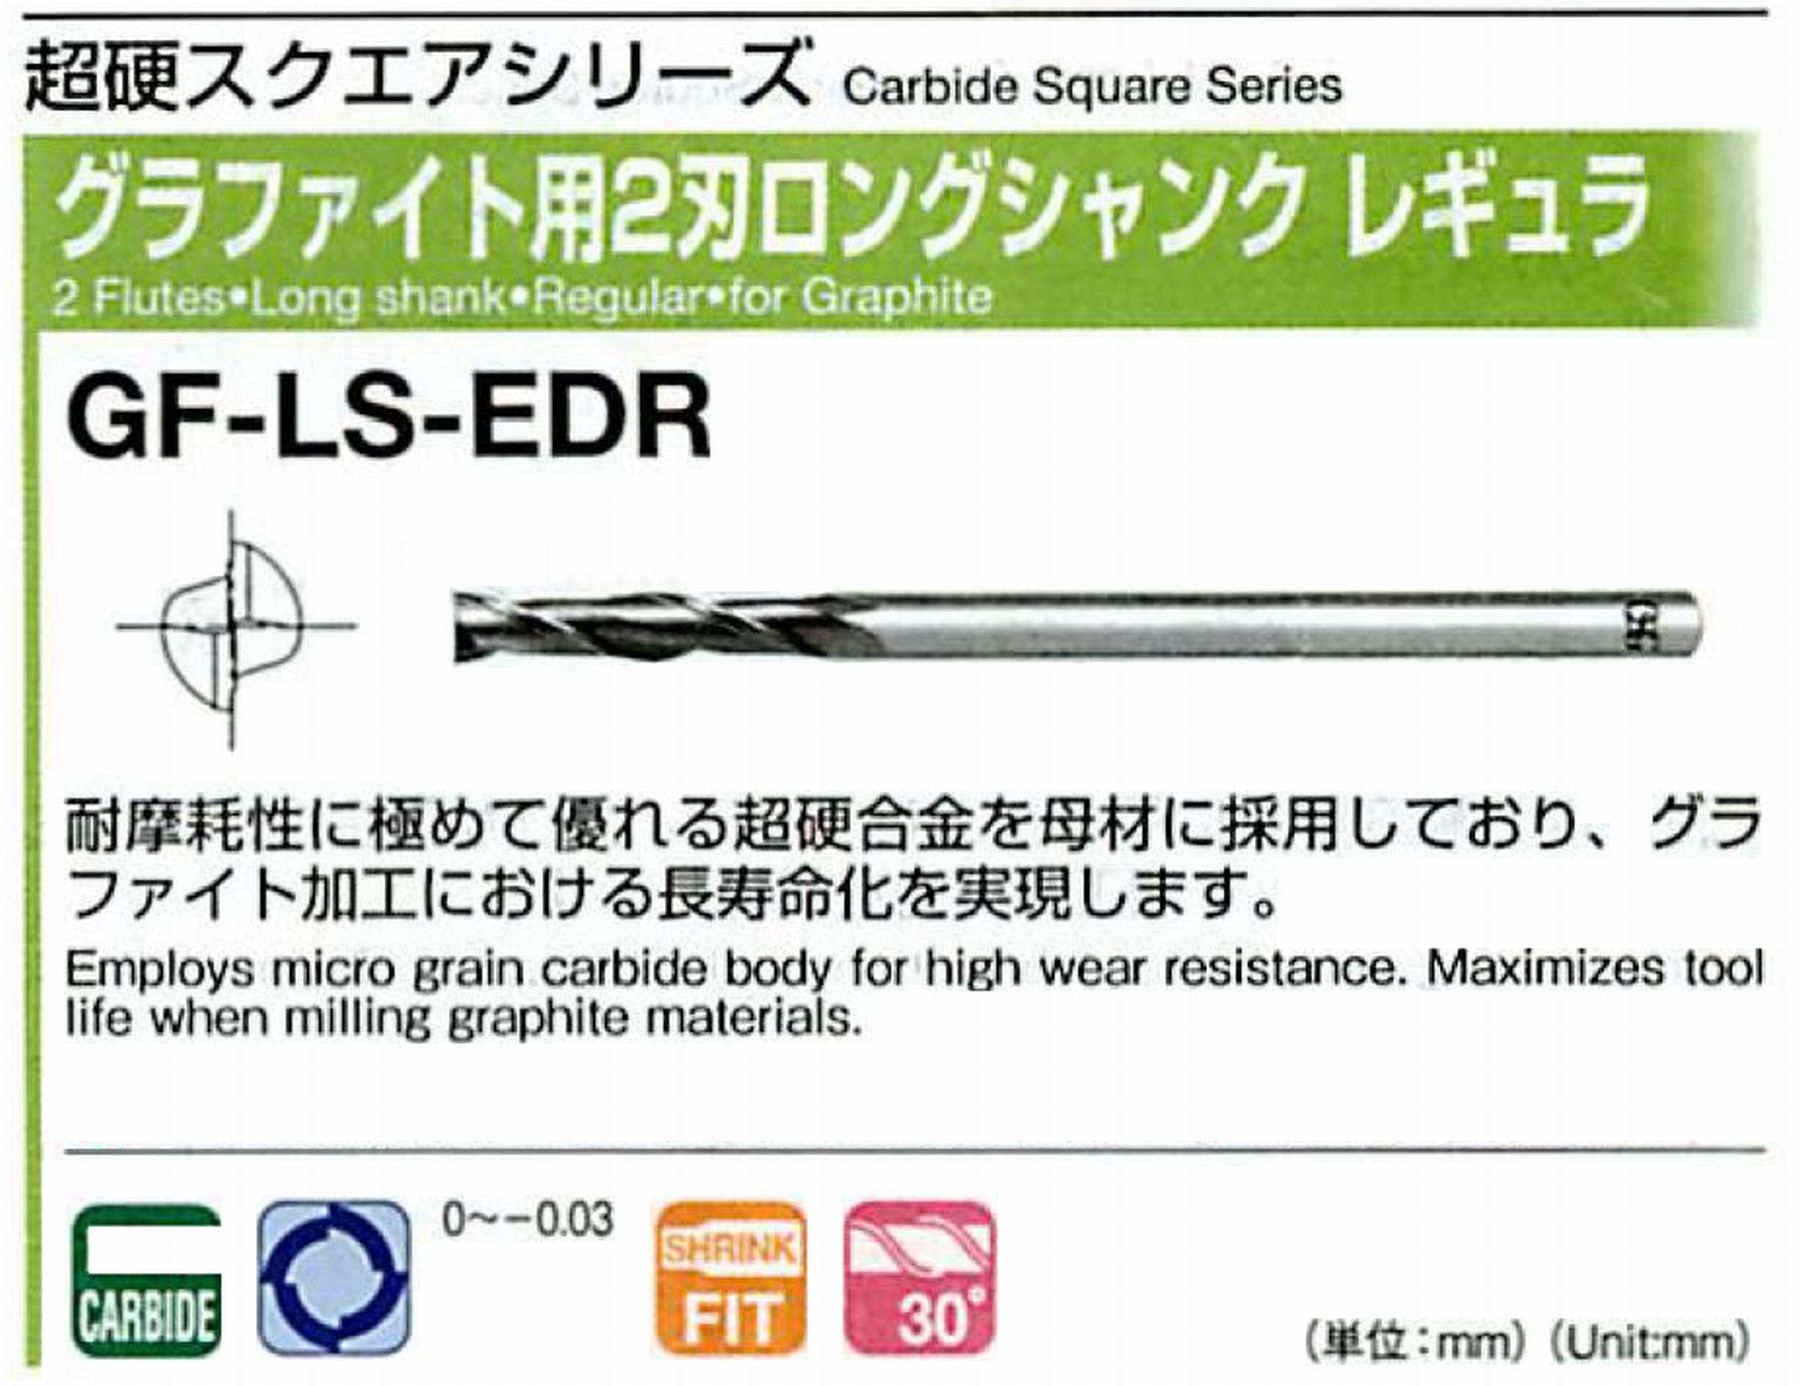 オーエスジー/OSG グラファイト用 2刃ロングシャンクレギュラ GF-LS-EDR 外径9 全長180 刃長45 シャンク径8mm 首下長- 首径-